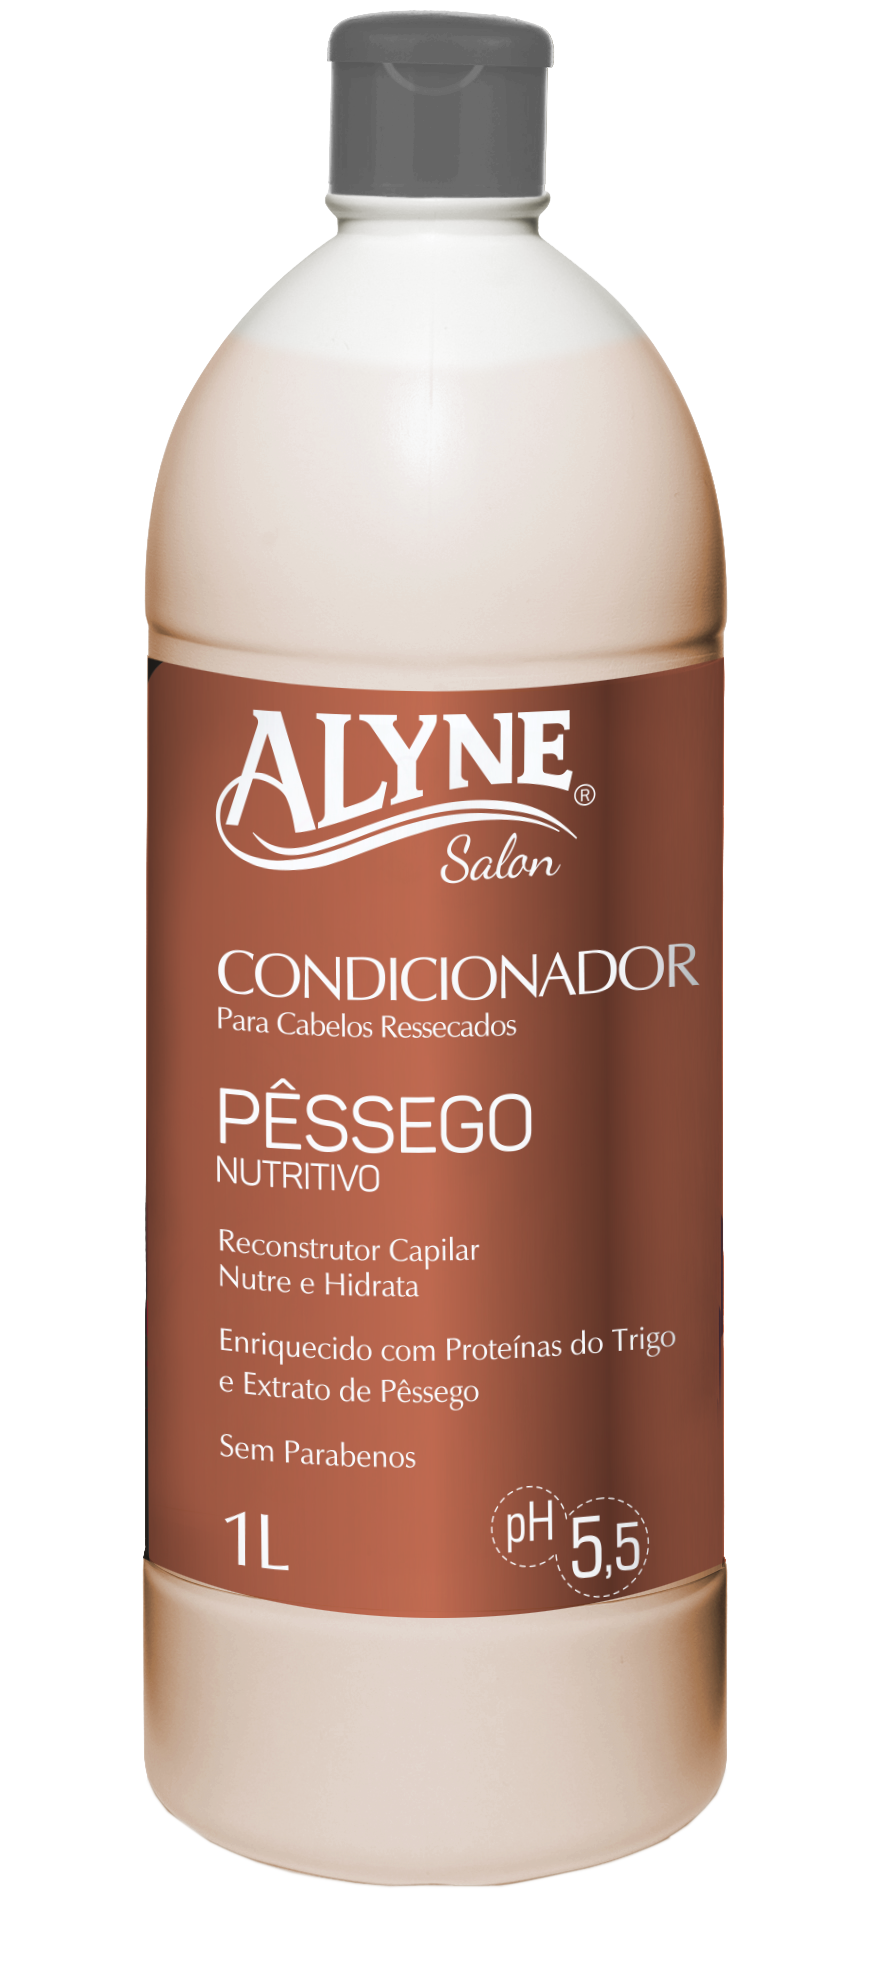 Condicionador Alyne Pêssego Nutritivo 1L